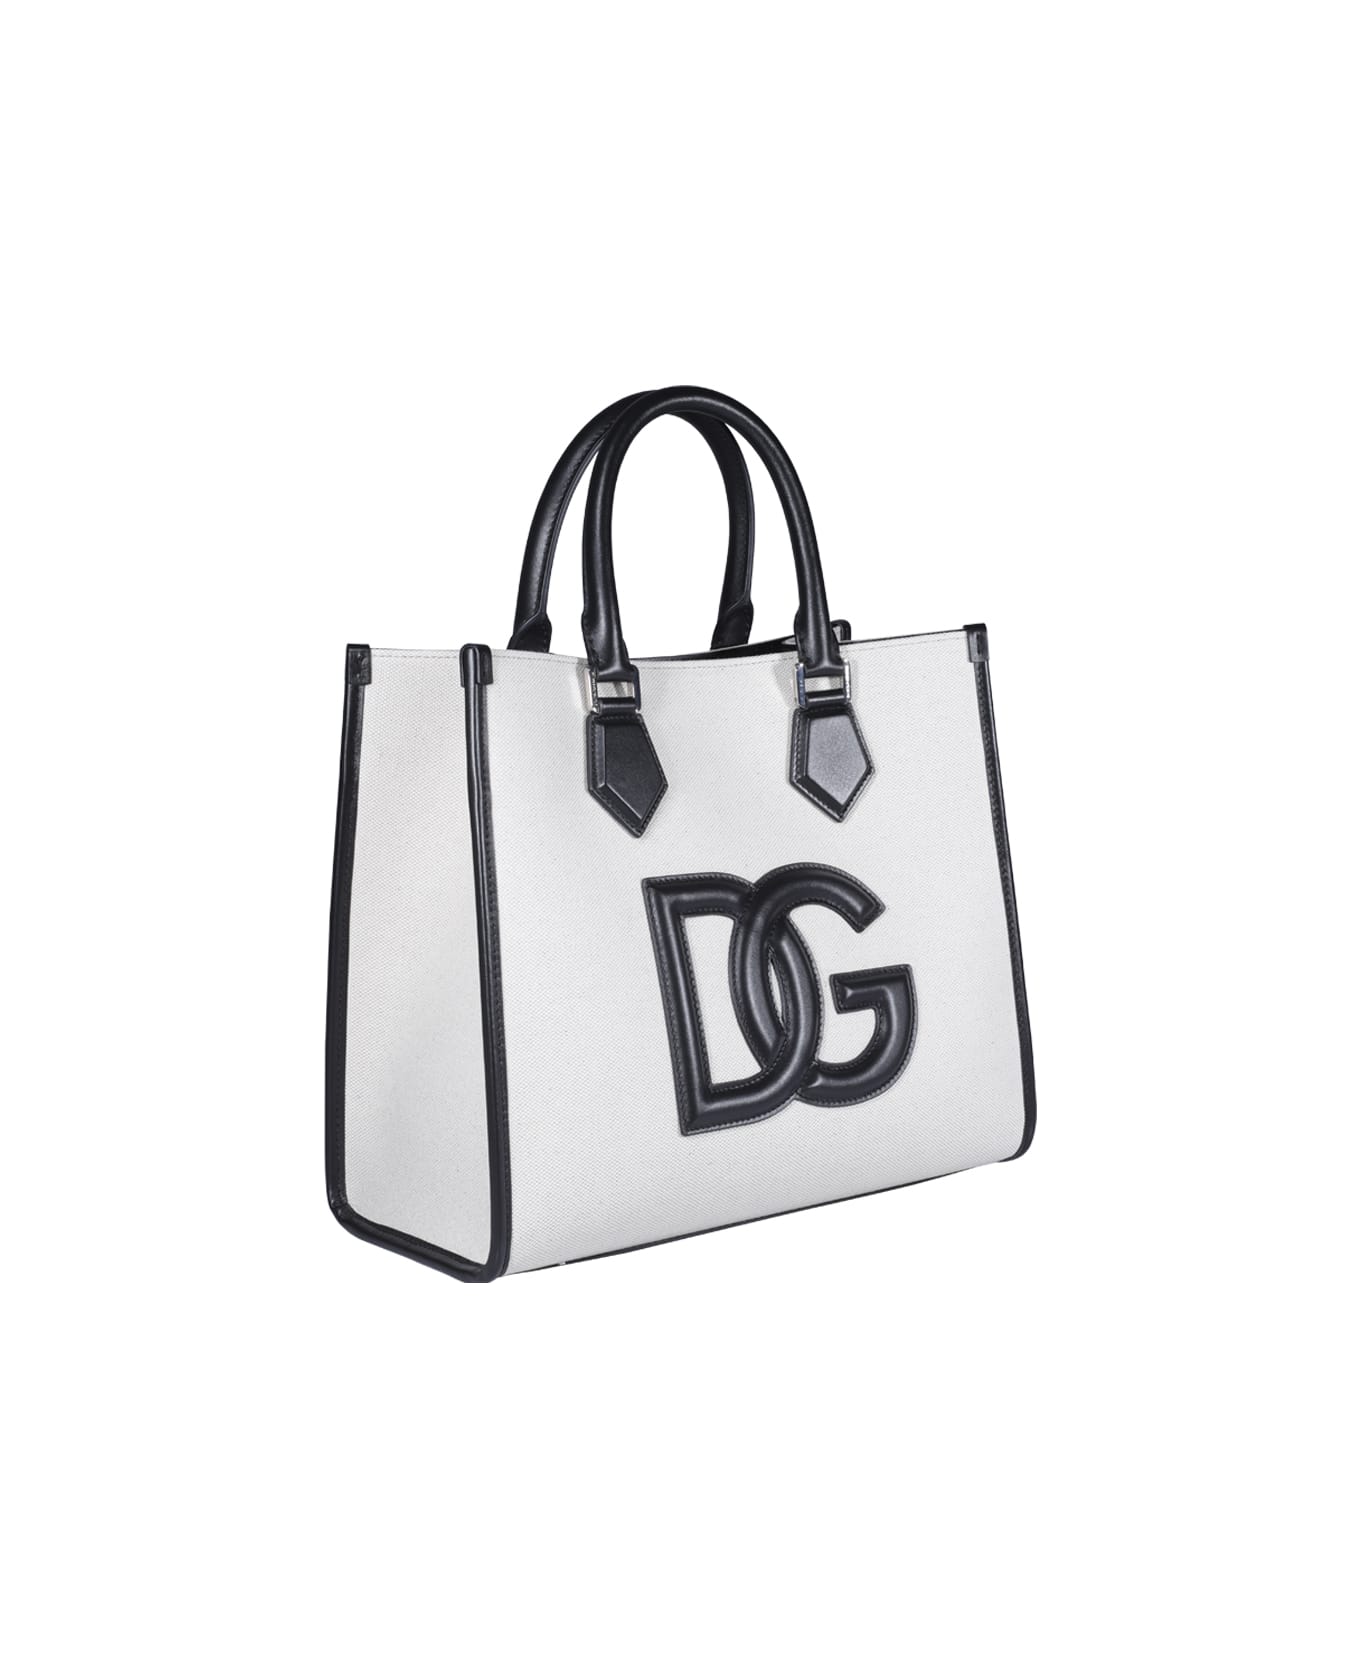 Dolce & Gabbana Shopping Bag - Beige トートバッグ